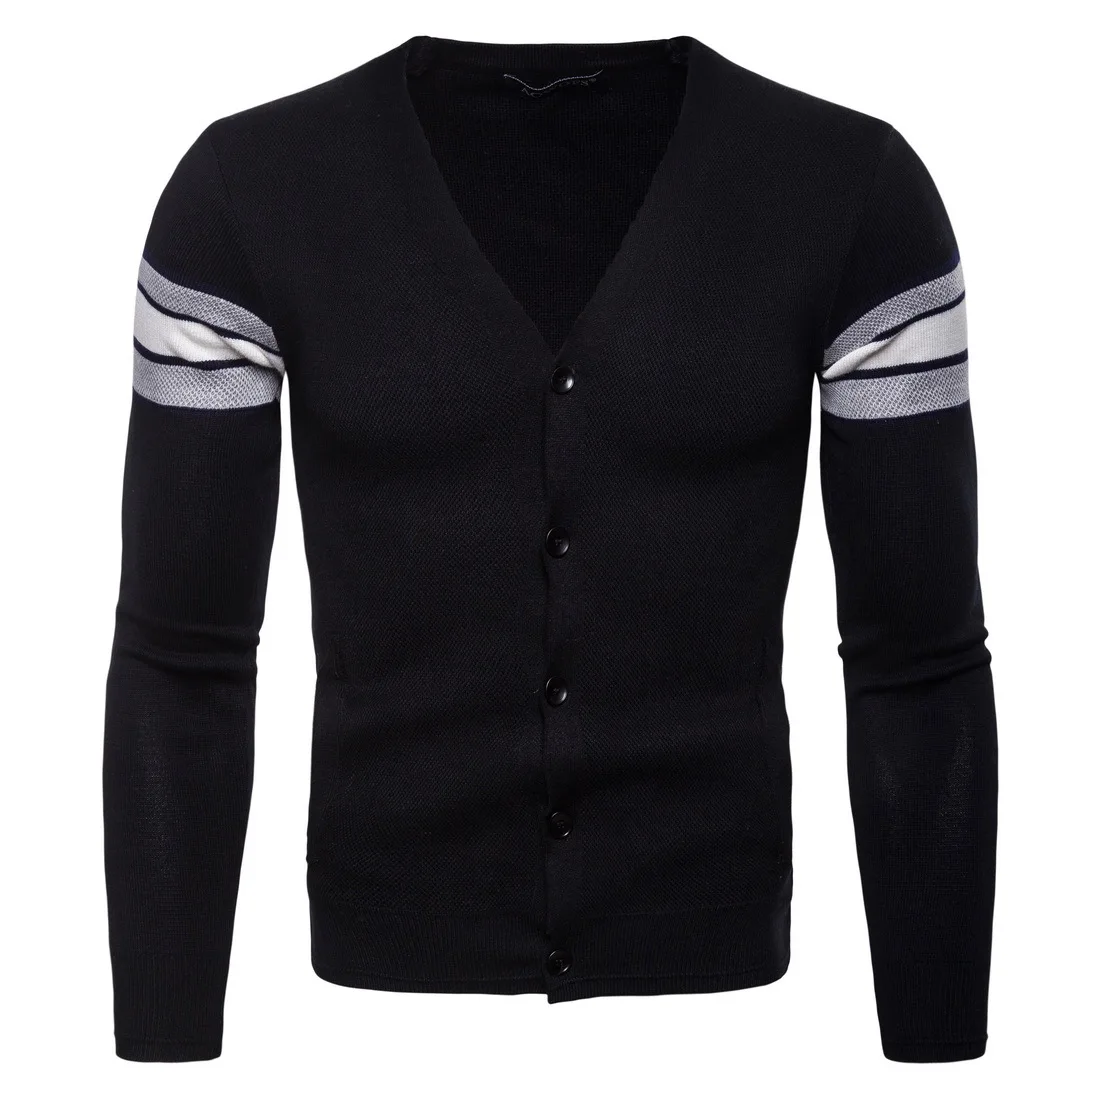 2018 Для мужчин свитер черные осенние вязаный кардиган блузки V воротник M-XXL |